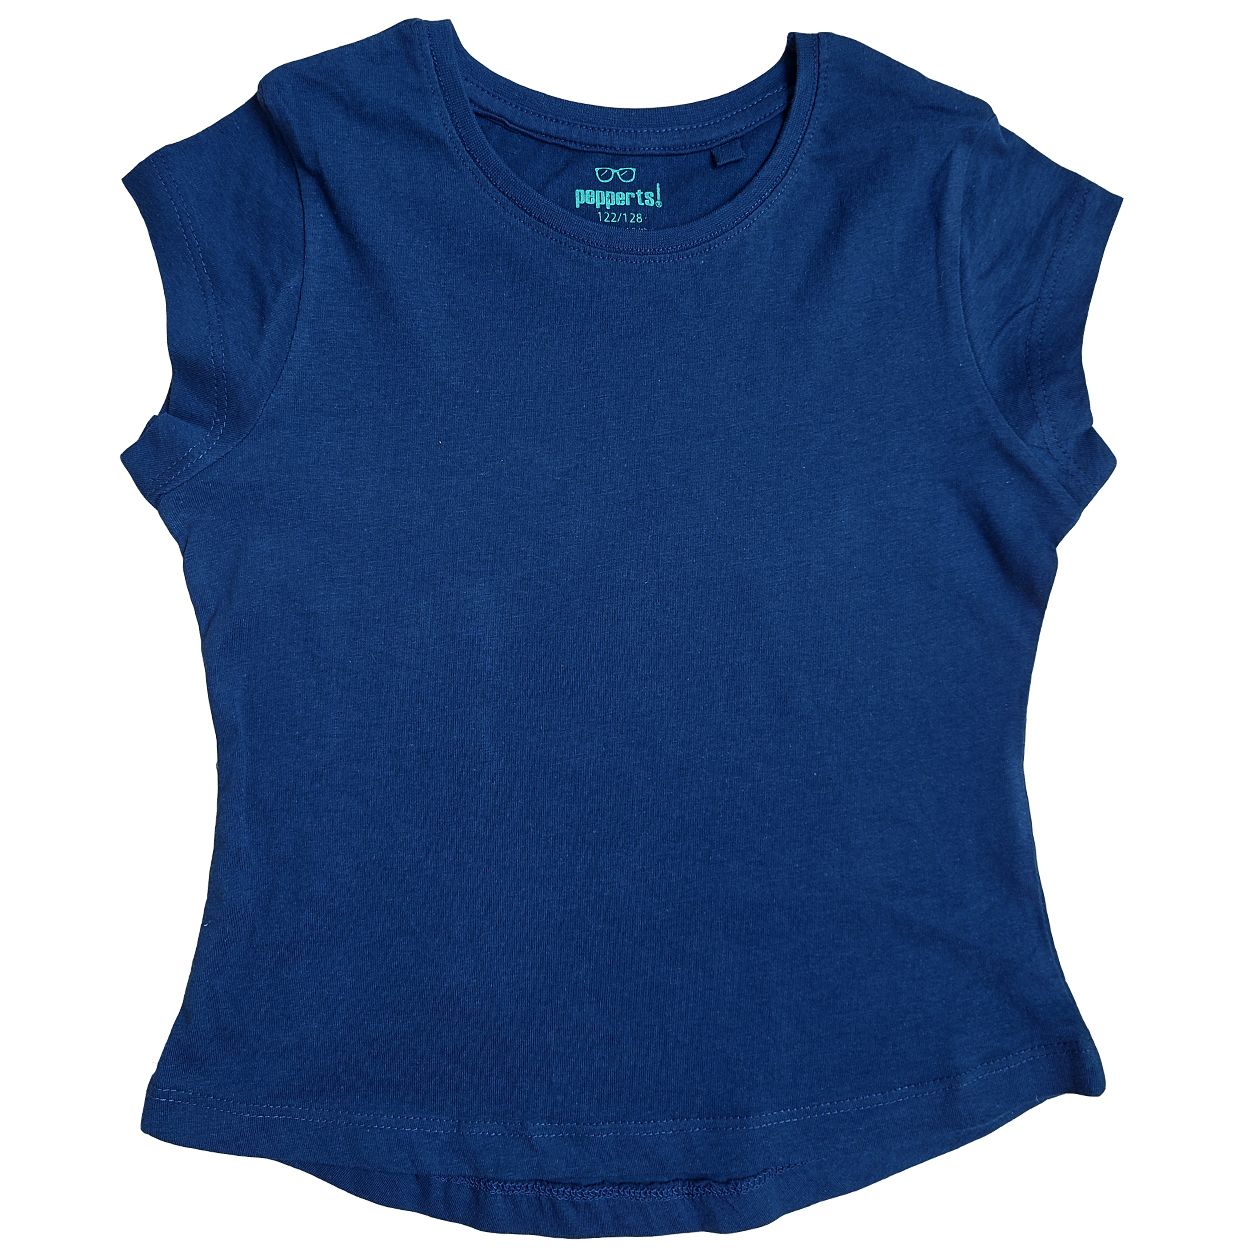 تی شرت آستین کوتاه دخترانه پیپرتس مدل اندامی رنگ آبی کاربنی -  - 1